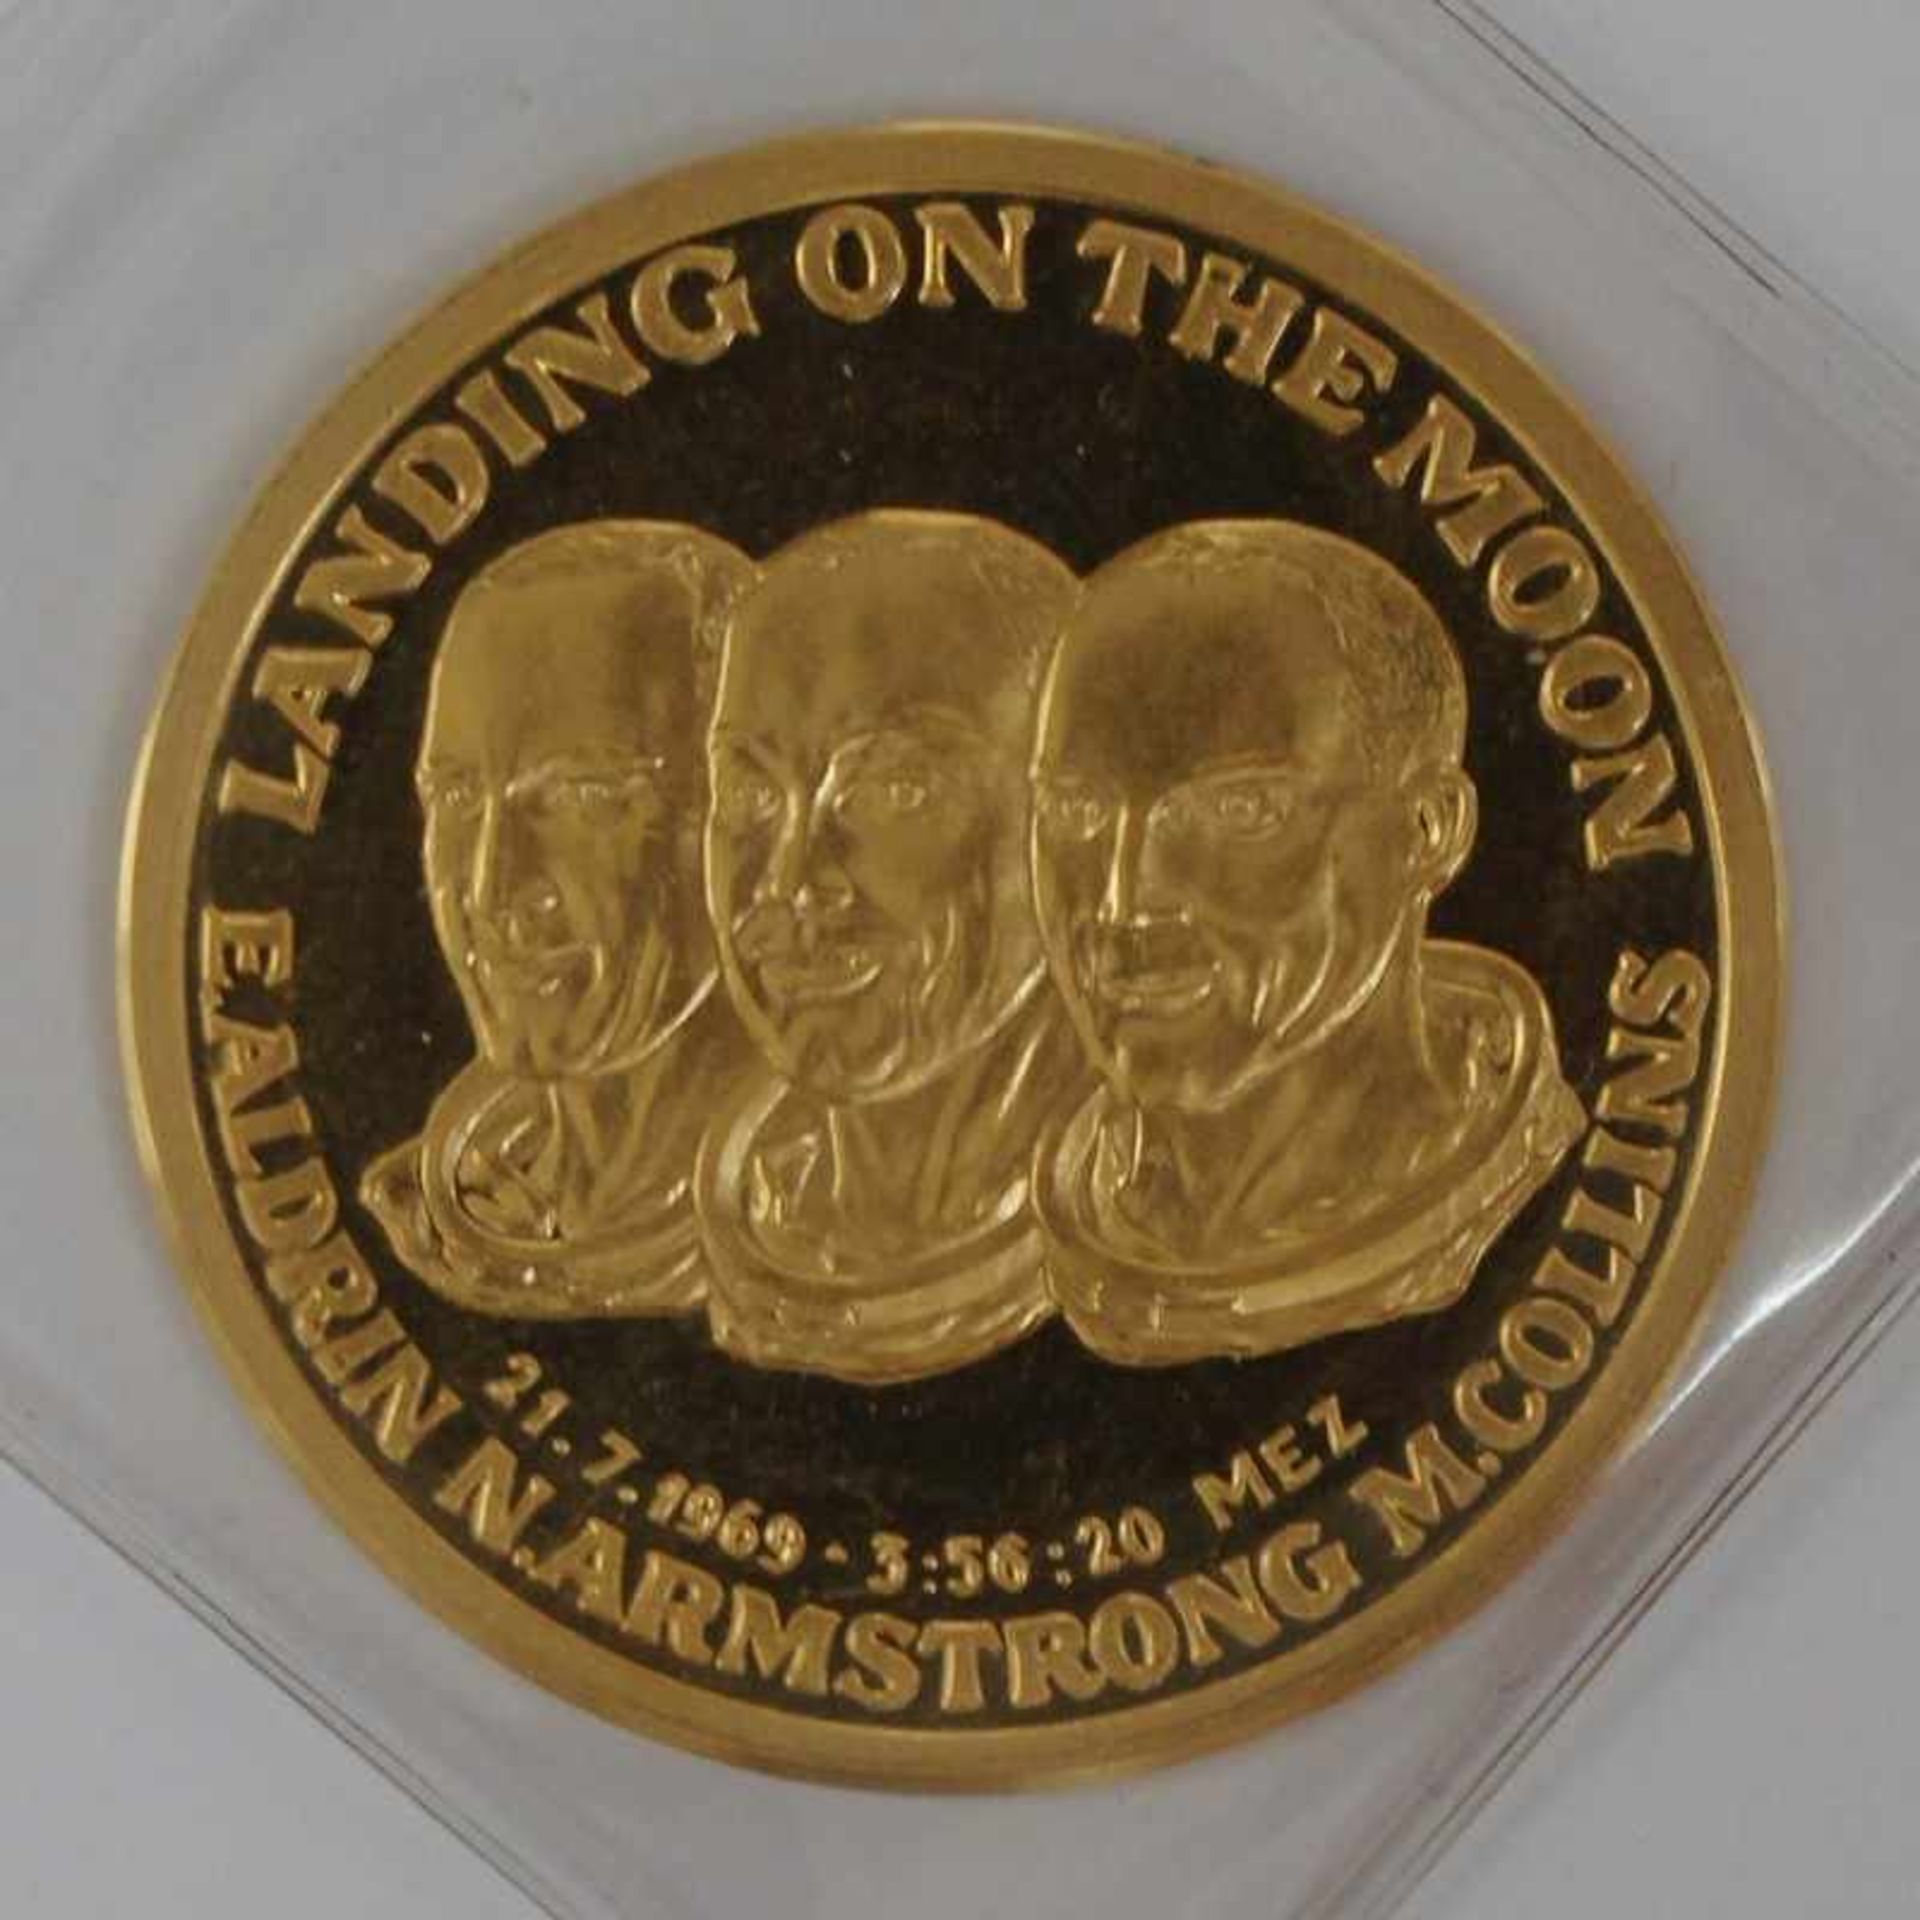 Gold Medaille 1969 1. Mondlandung 1969, Collins, Aldrin, Armstrong, gest. HH 999,9, D 3,4 cm, G 15,